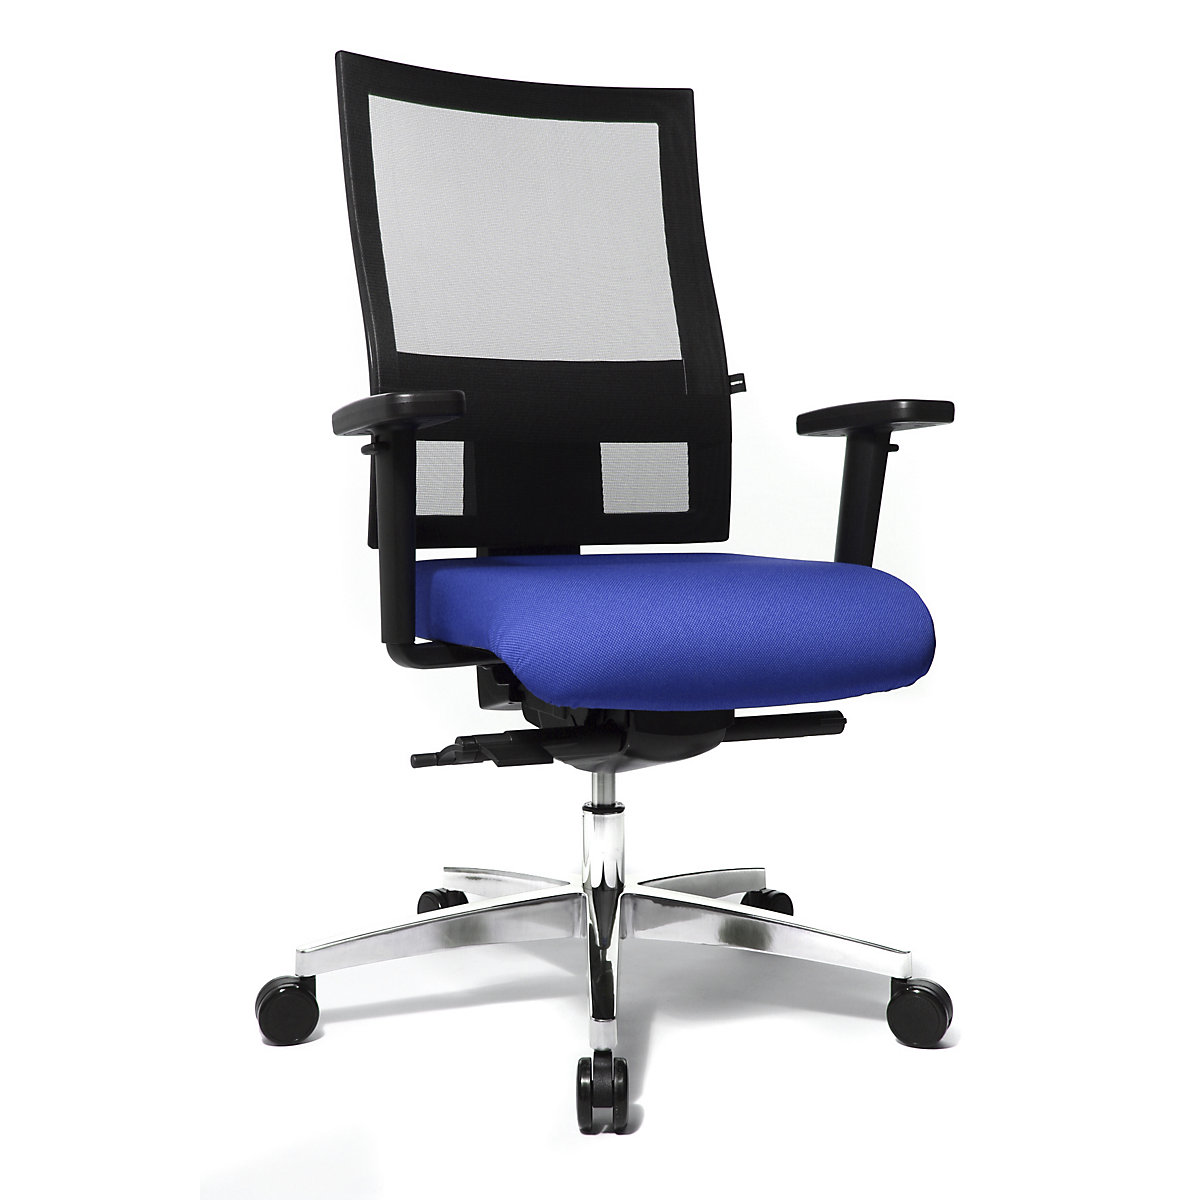 Sedia girevole da ufficio SITNESS 60 – Topstar, con schienale traspirante, braccioli inclusi, blu / nero-1